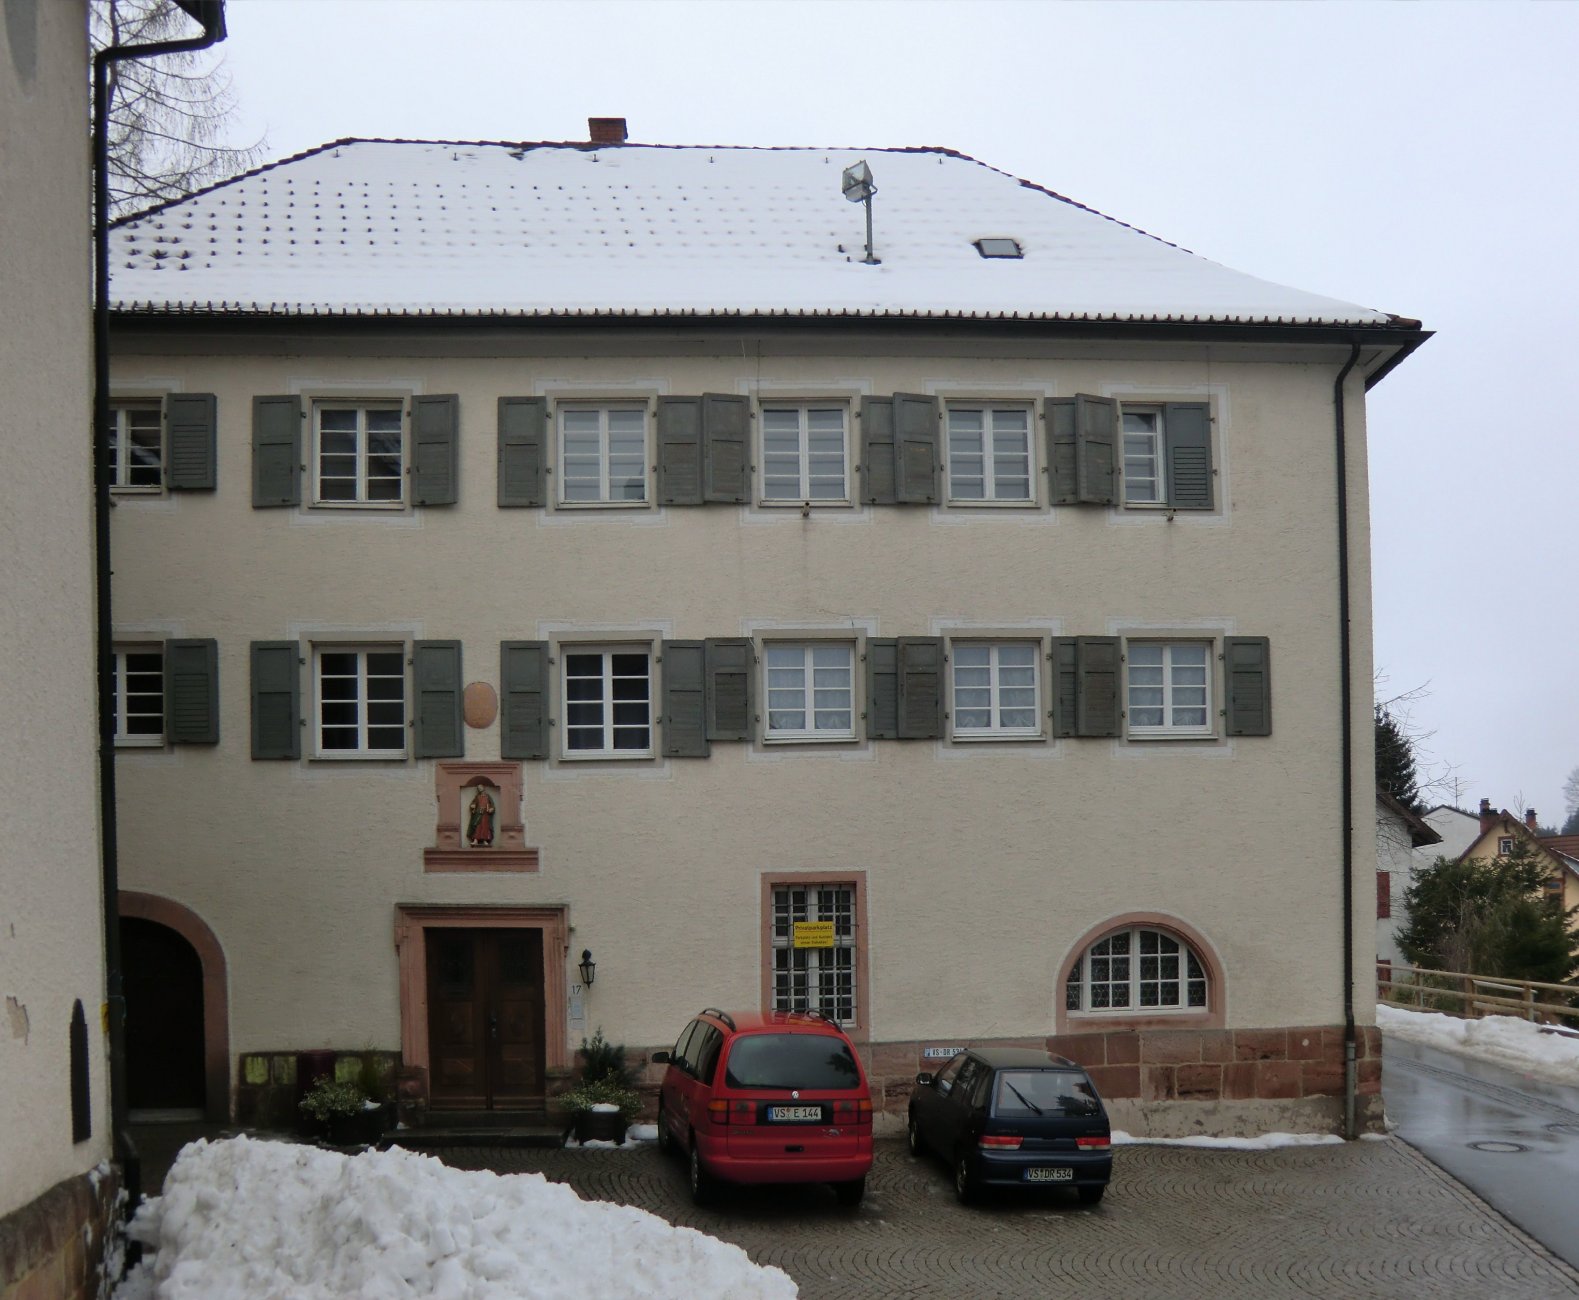 Wallfahrtspfarrhaus in Triberg im Schwarzwald